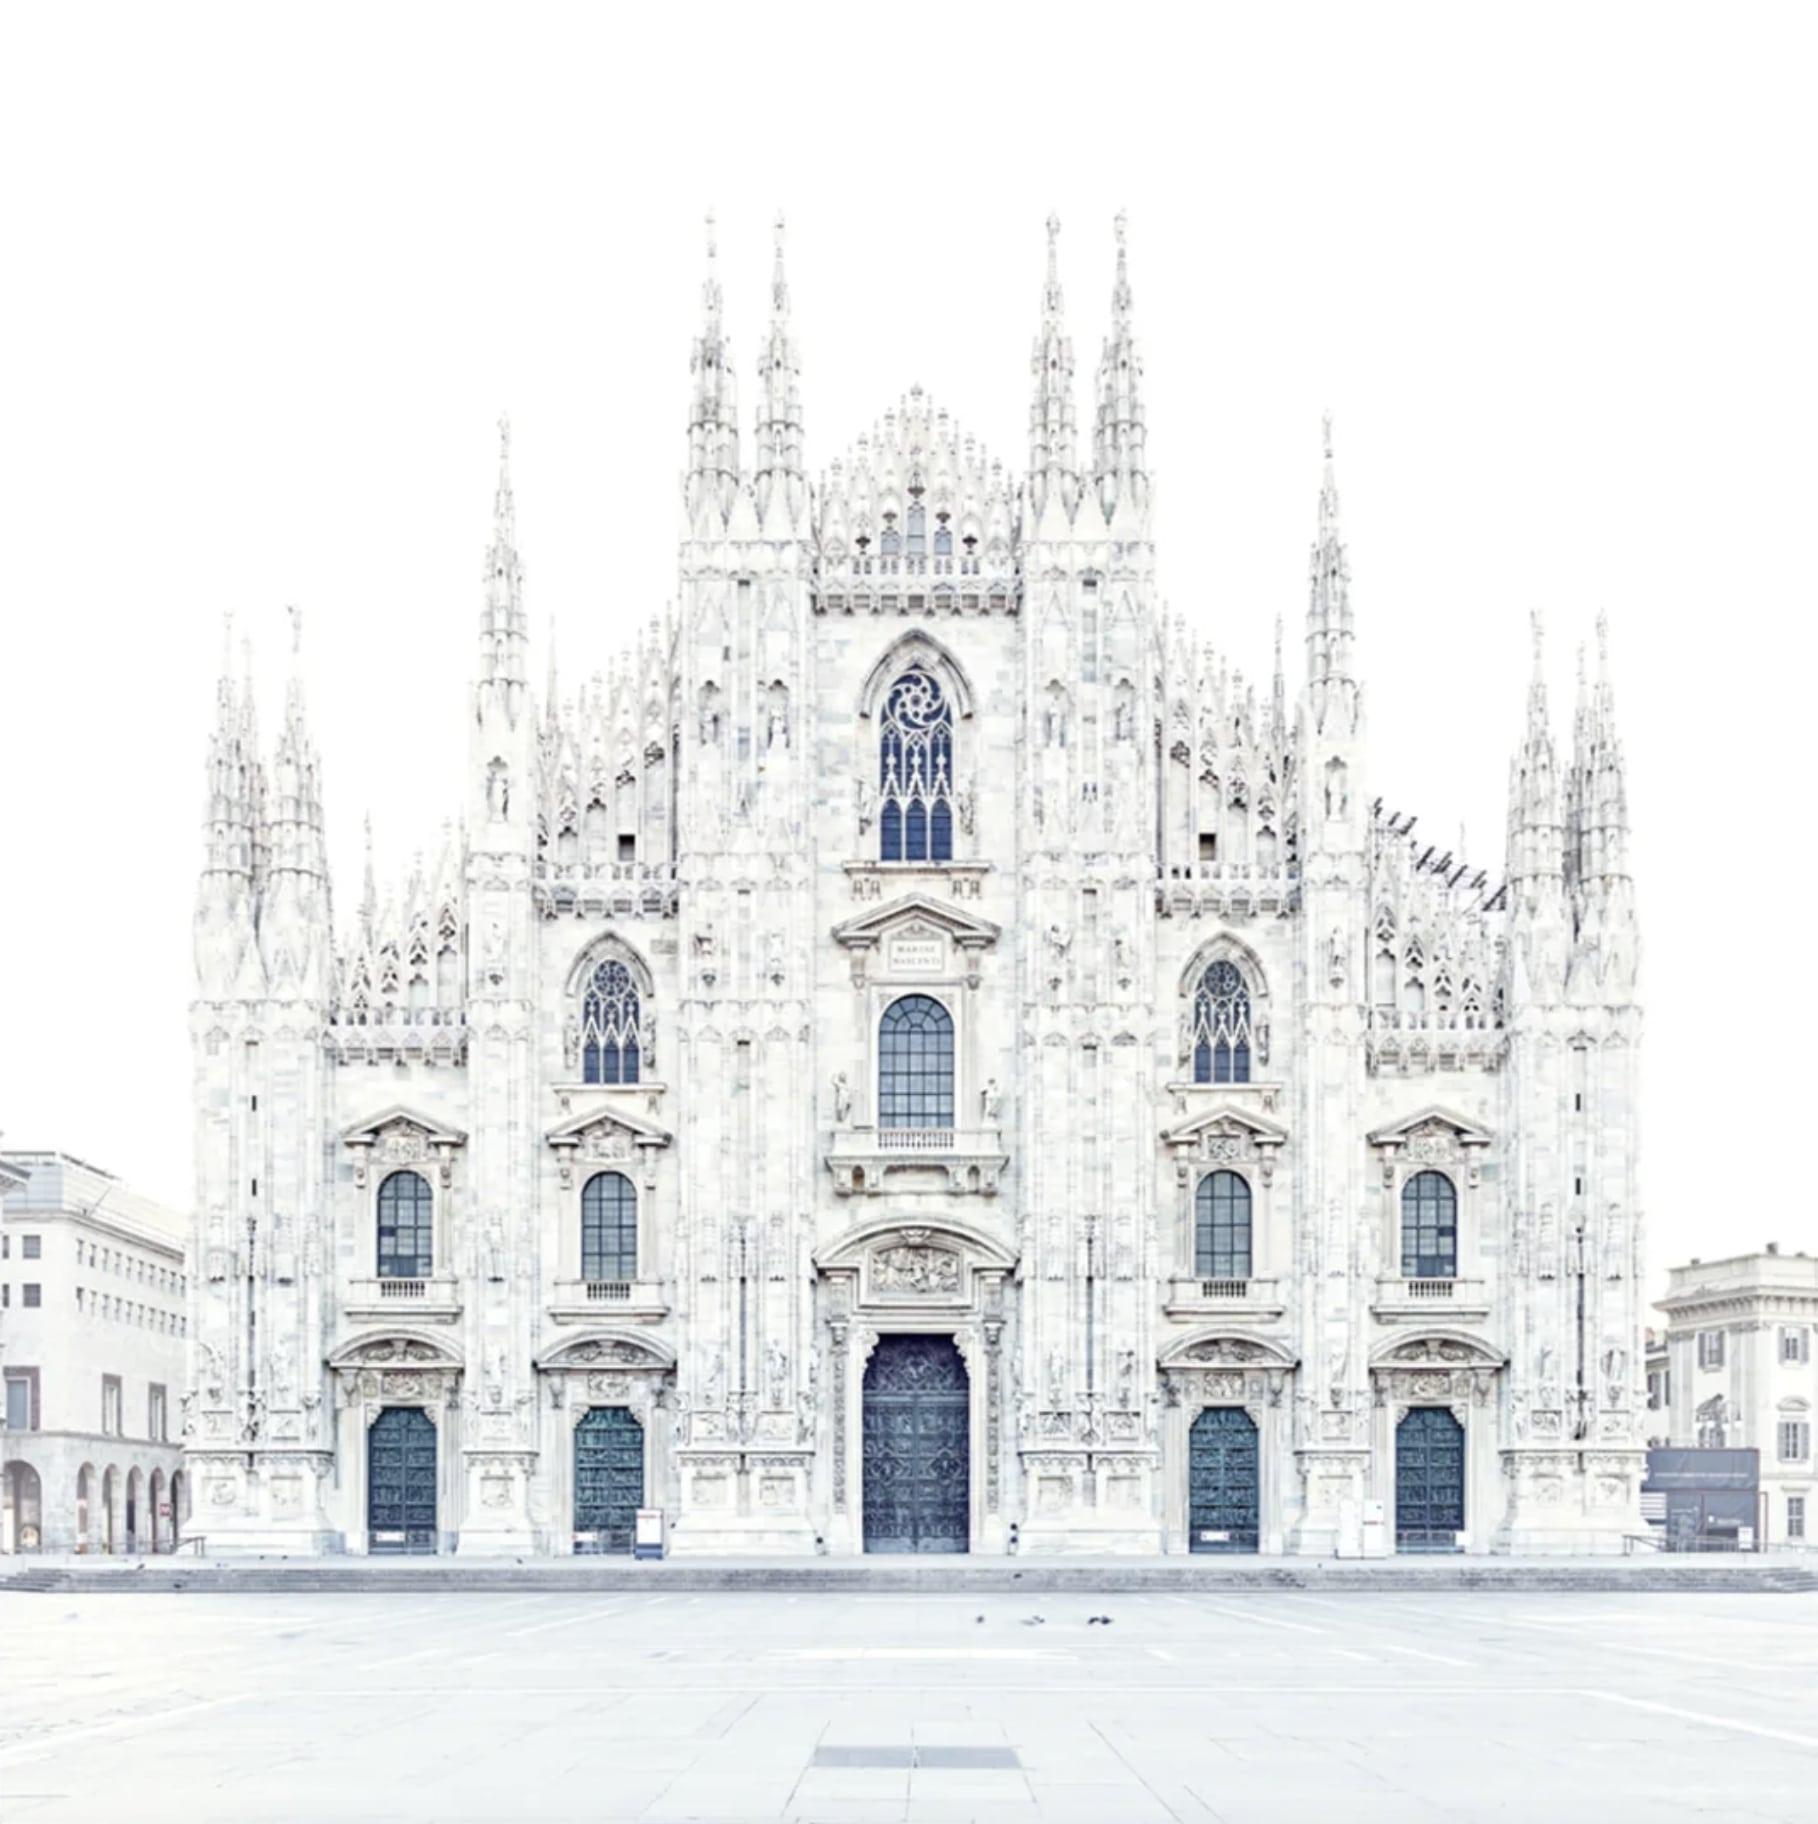 David Burdeny - Piazza del Duomo, Milano, Italy, Photography 2016, Printed After